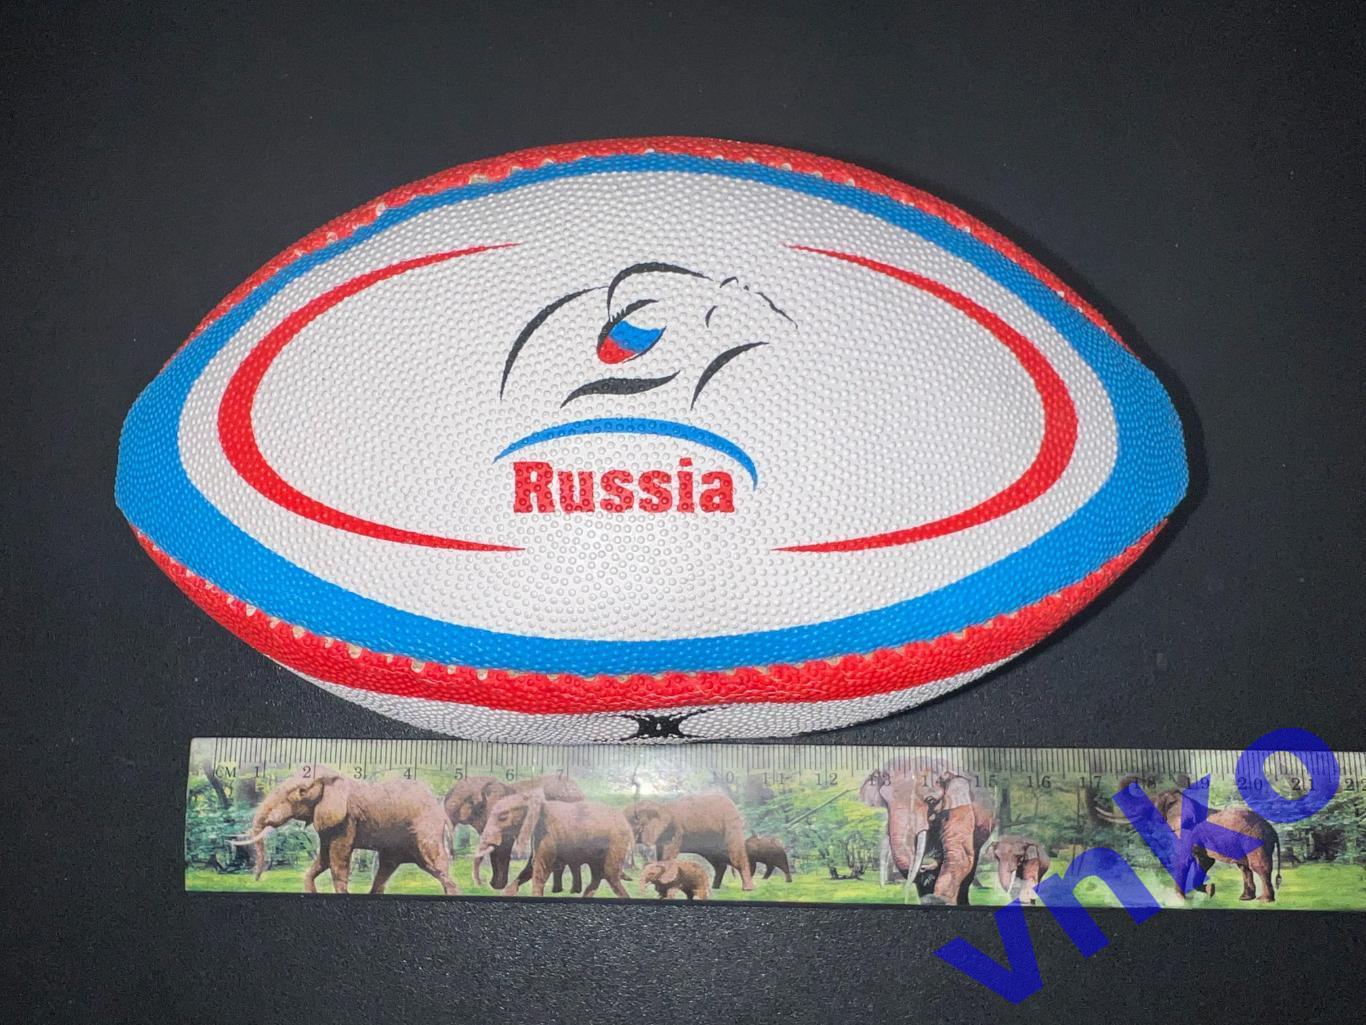 сувенирный регби-мяч Gilbert мини - Сборная России 2